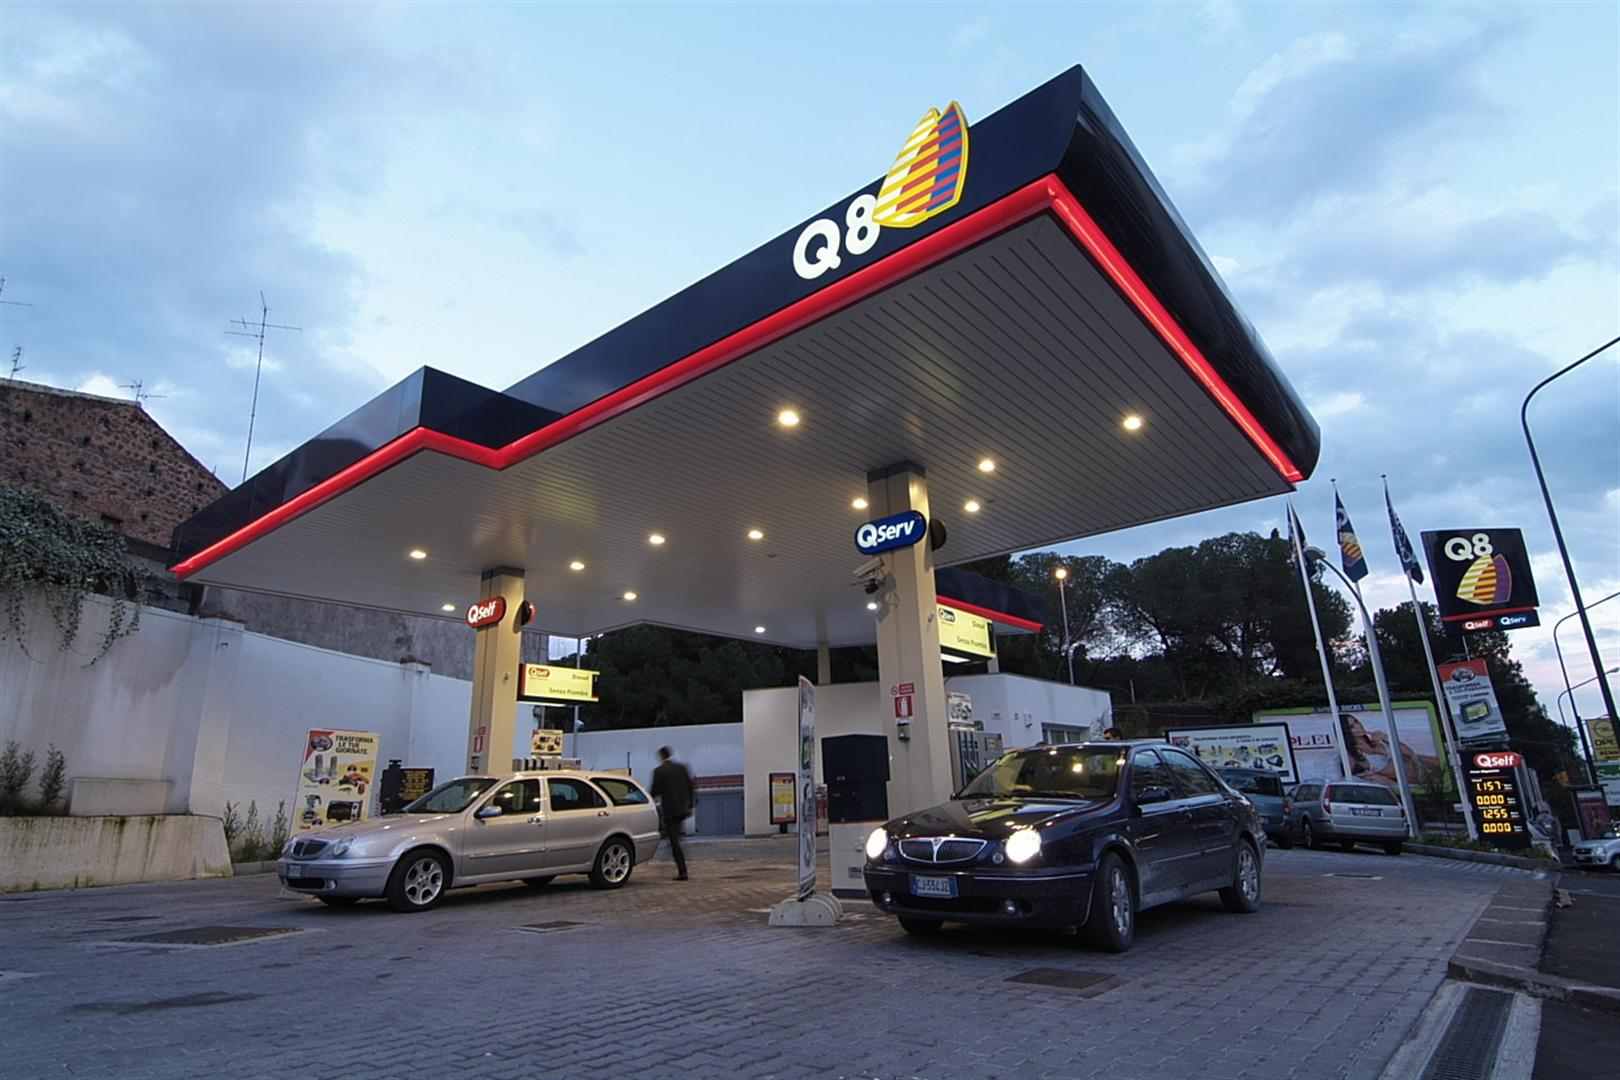 ارتفاع في أسعار البنزين في الكويت بداية من سبتمبر القادم بنسب تصل الى 80% في أقصاها